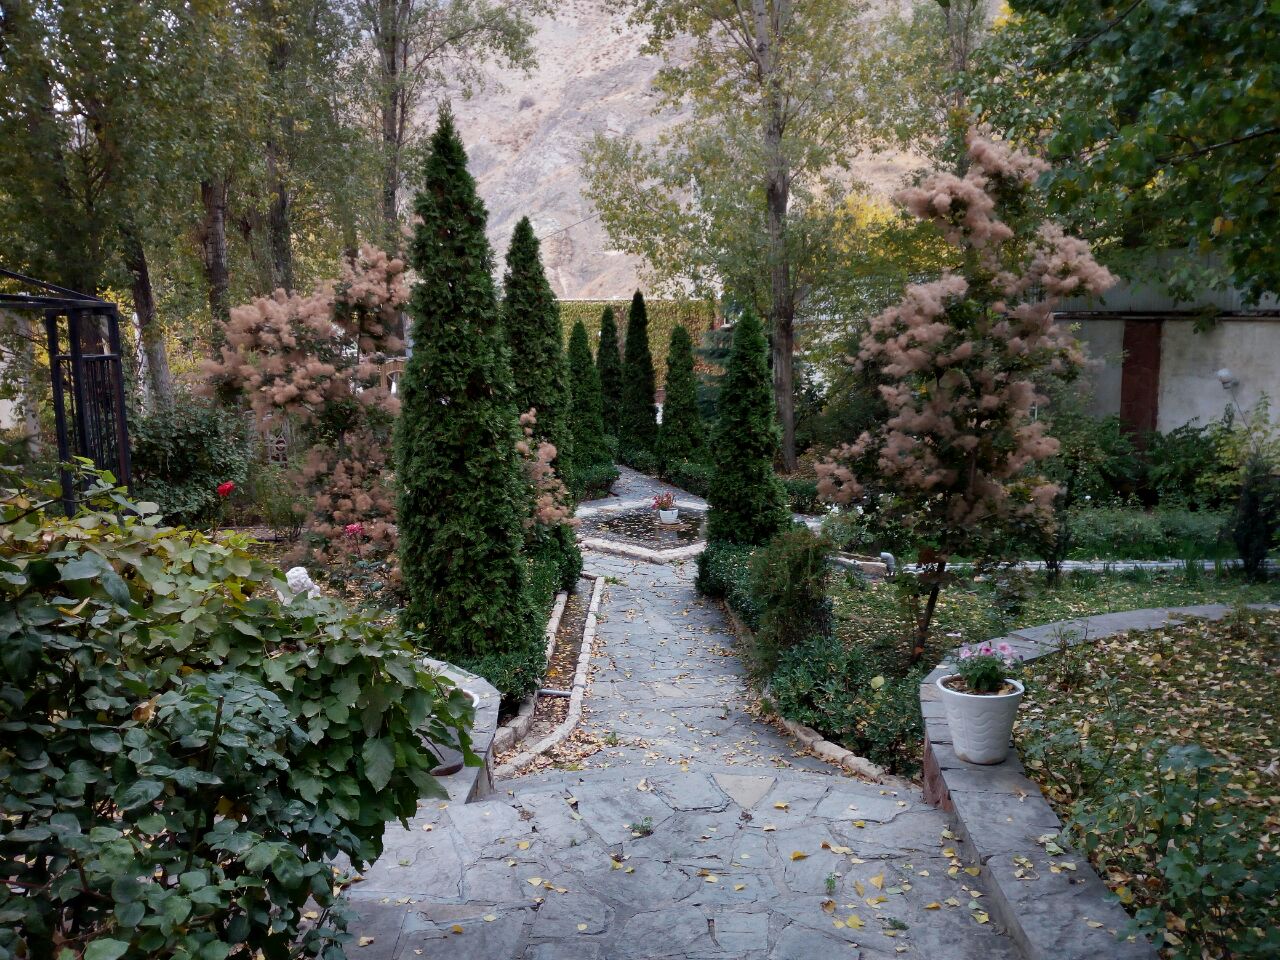 اجاره ویلا در تهران ,ویلای جاده اوشان,باغ بزرگ با آبنما و رودخانه